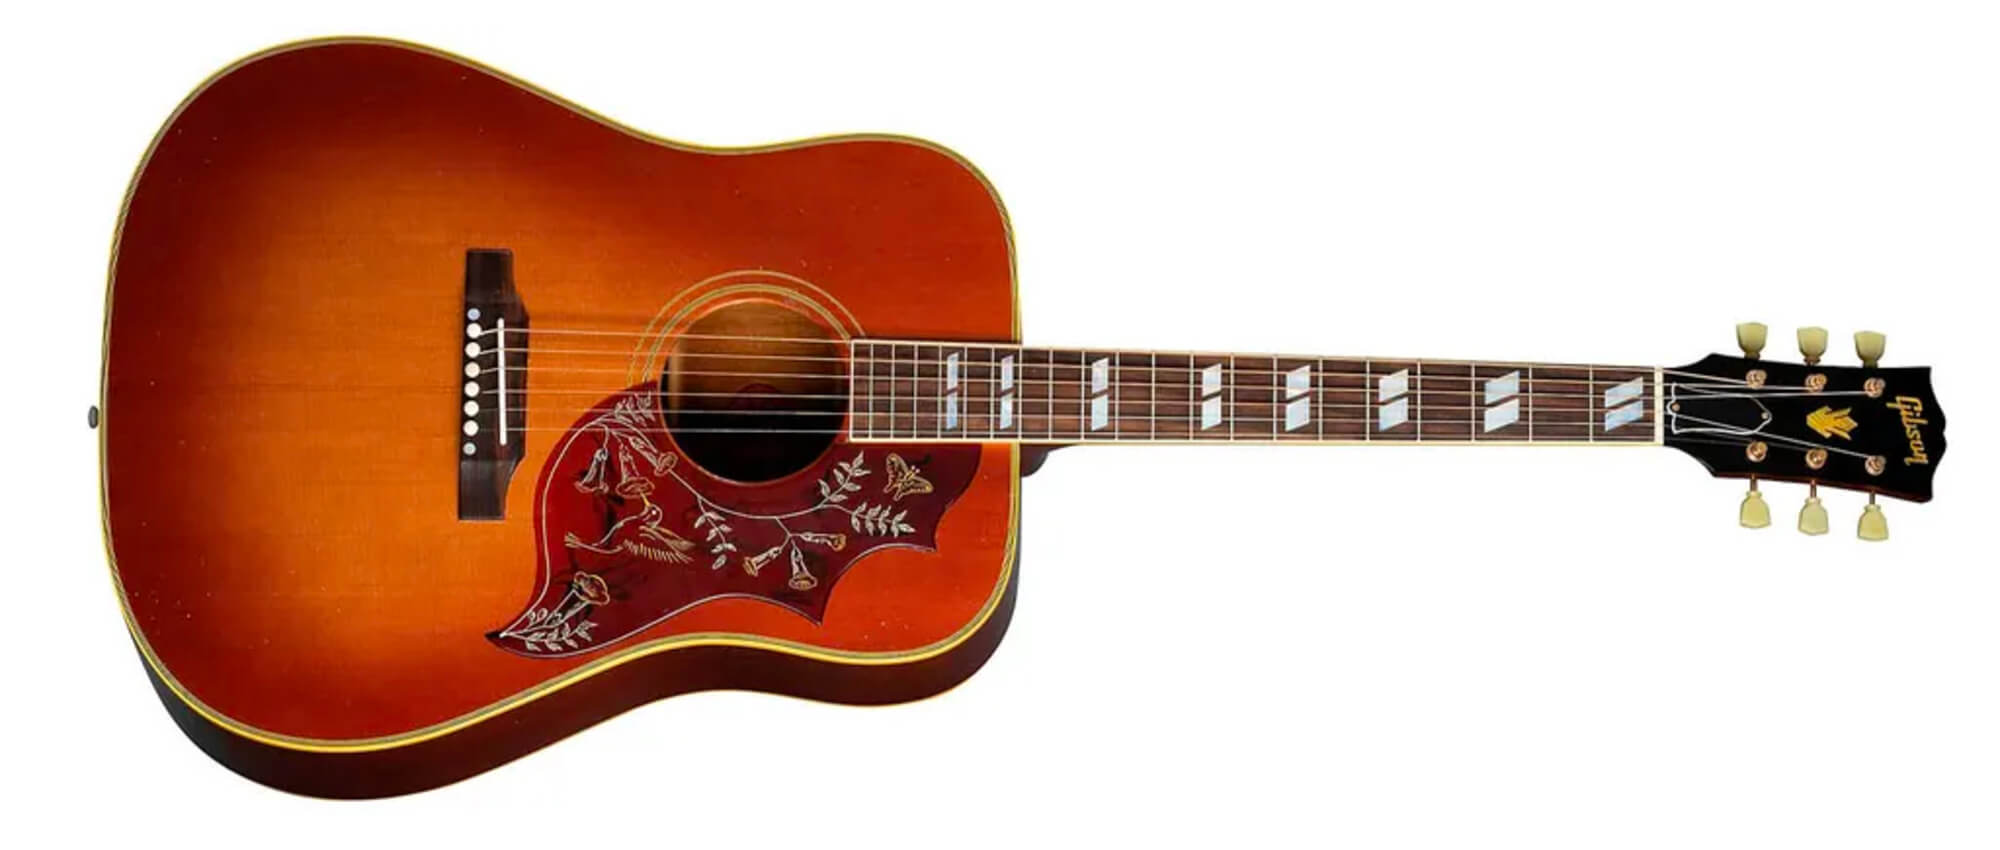 Gibson 1960 Hummingbird Heritage Cherry Sunburst Light Aged